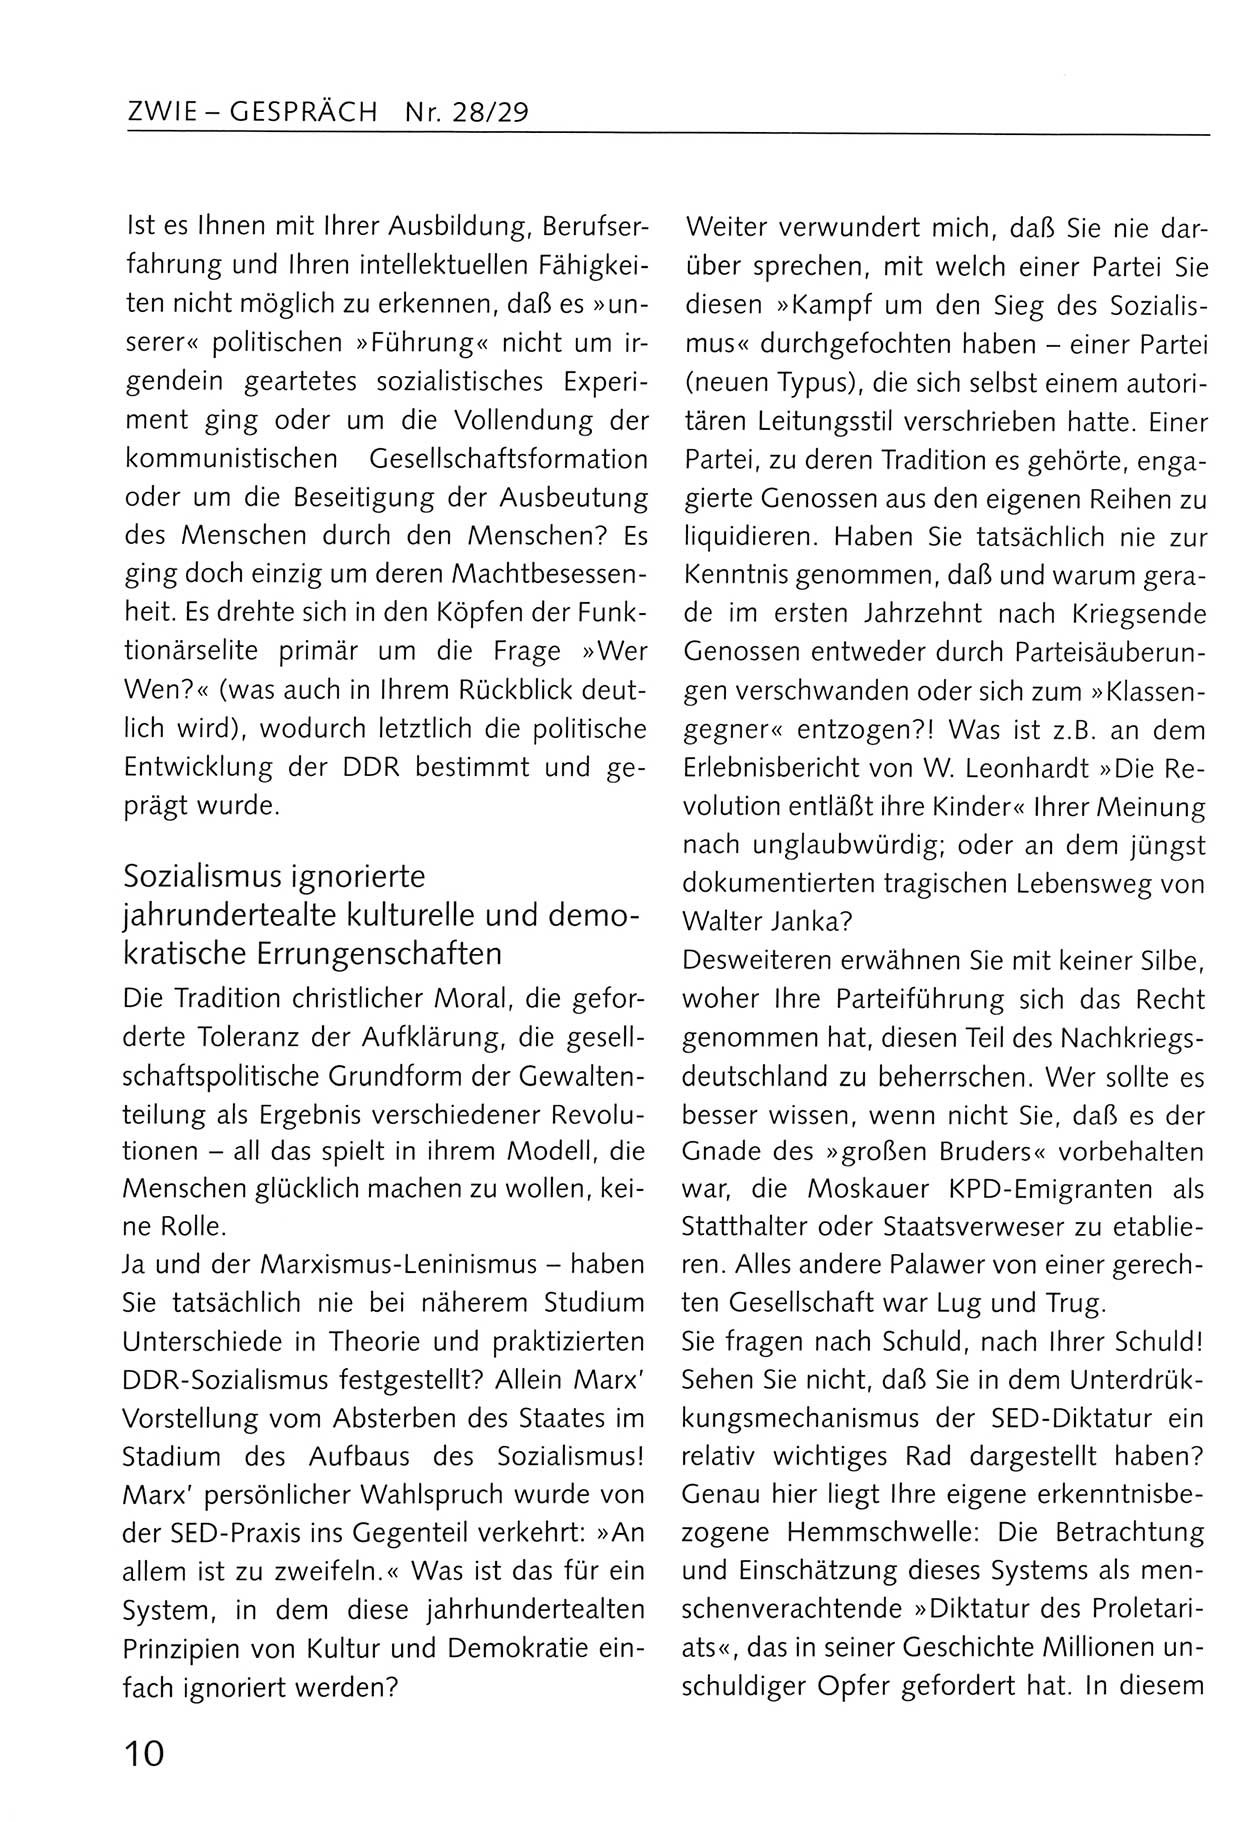 Zwie-Gespräch, Beiträge zum Umgang mit der Staatssicherheits-Vergangenheit [Deutsche Demokratische Republik (DDR)], Ausgabe Nr. 28/29, Berlin 1995, Seite 10 (Zwie-Gespr. Ausg. 28/29 1995, S. 10)